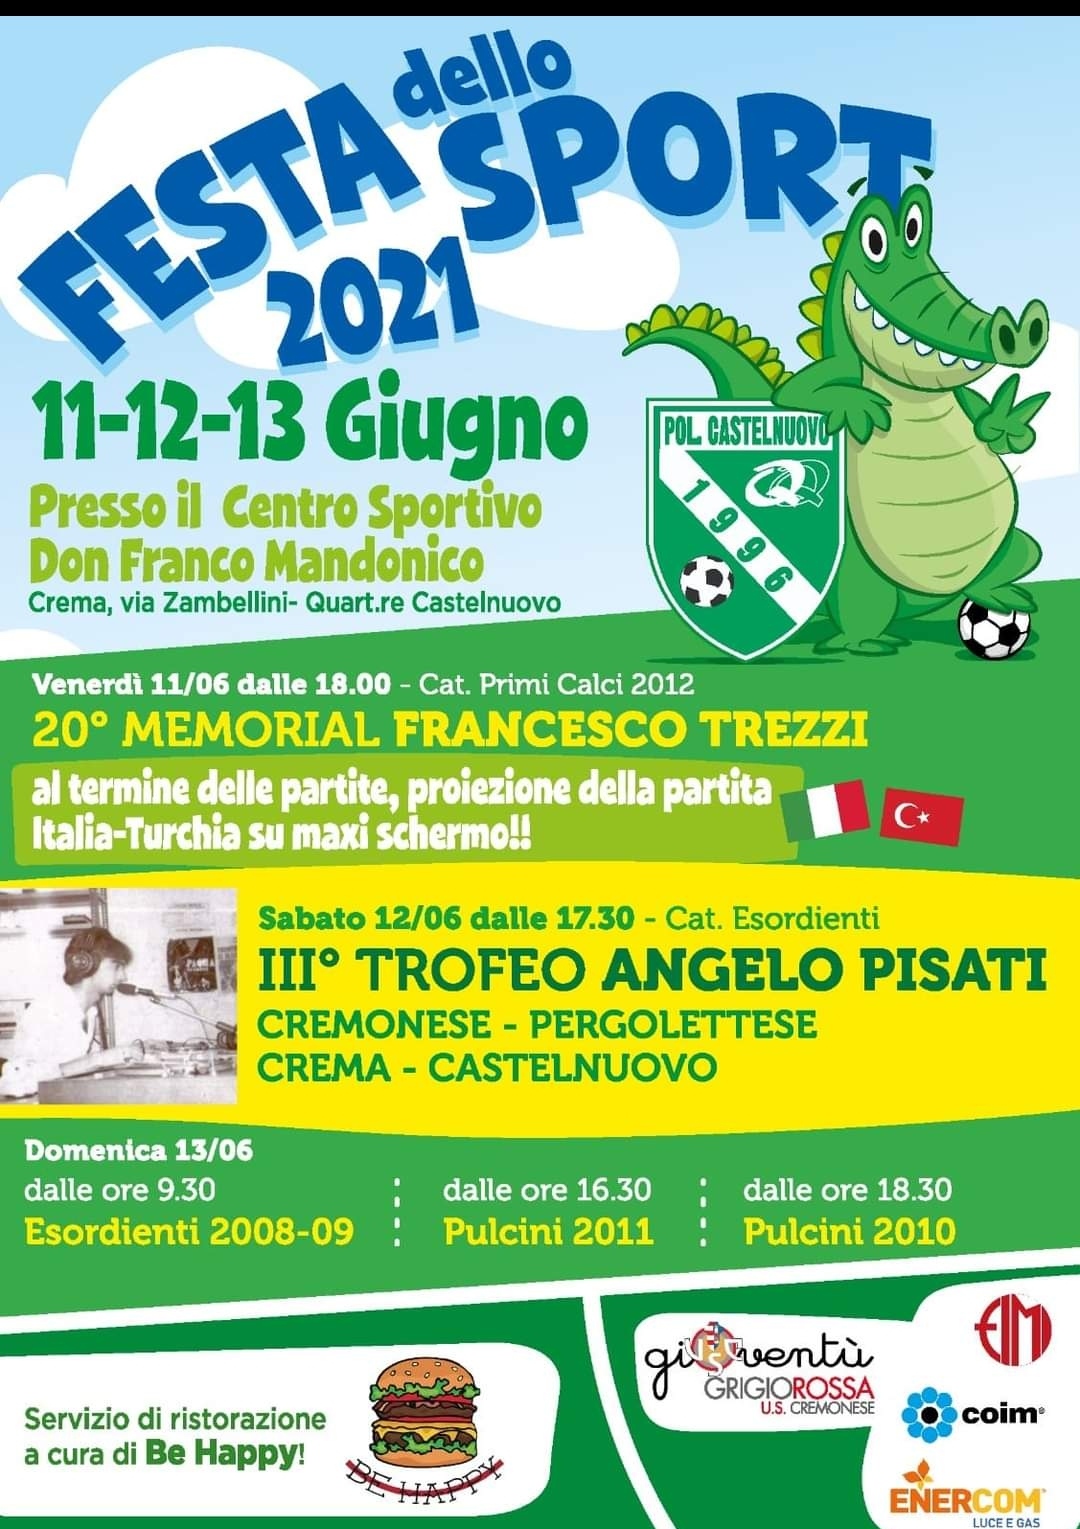 Paolo Pissavini, direttore generale della Polisportiva Castelnuovo, scrittore e Bella Persona presenta la Festa dello Sport a Castelnuovo